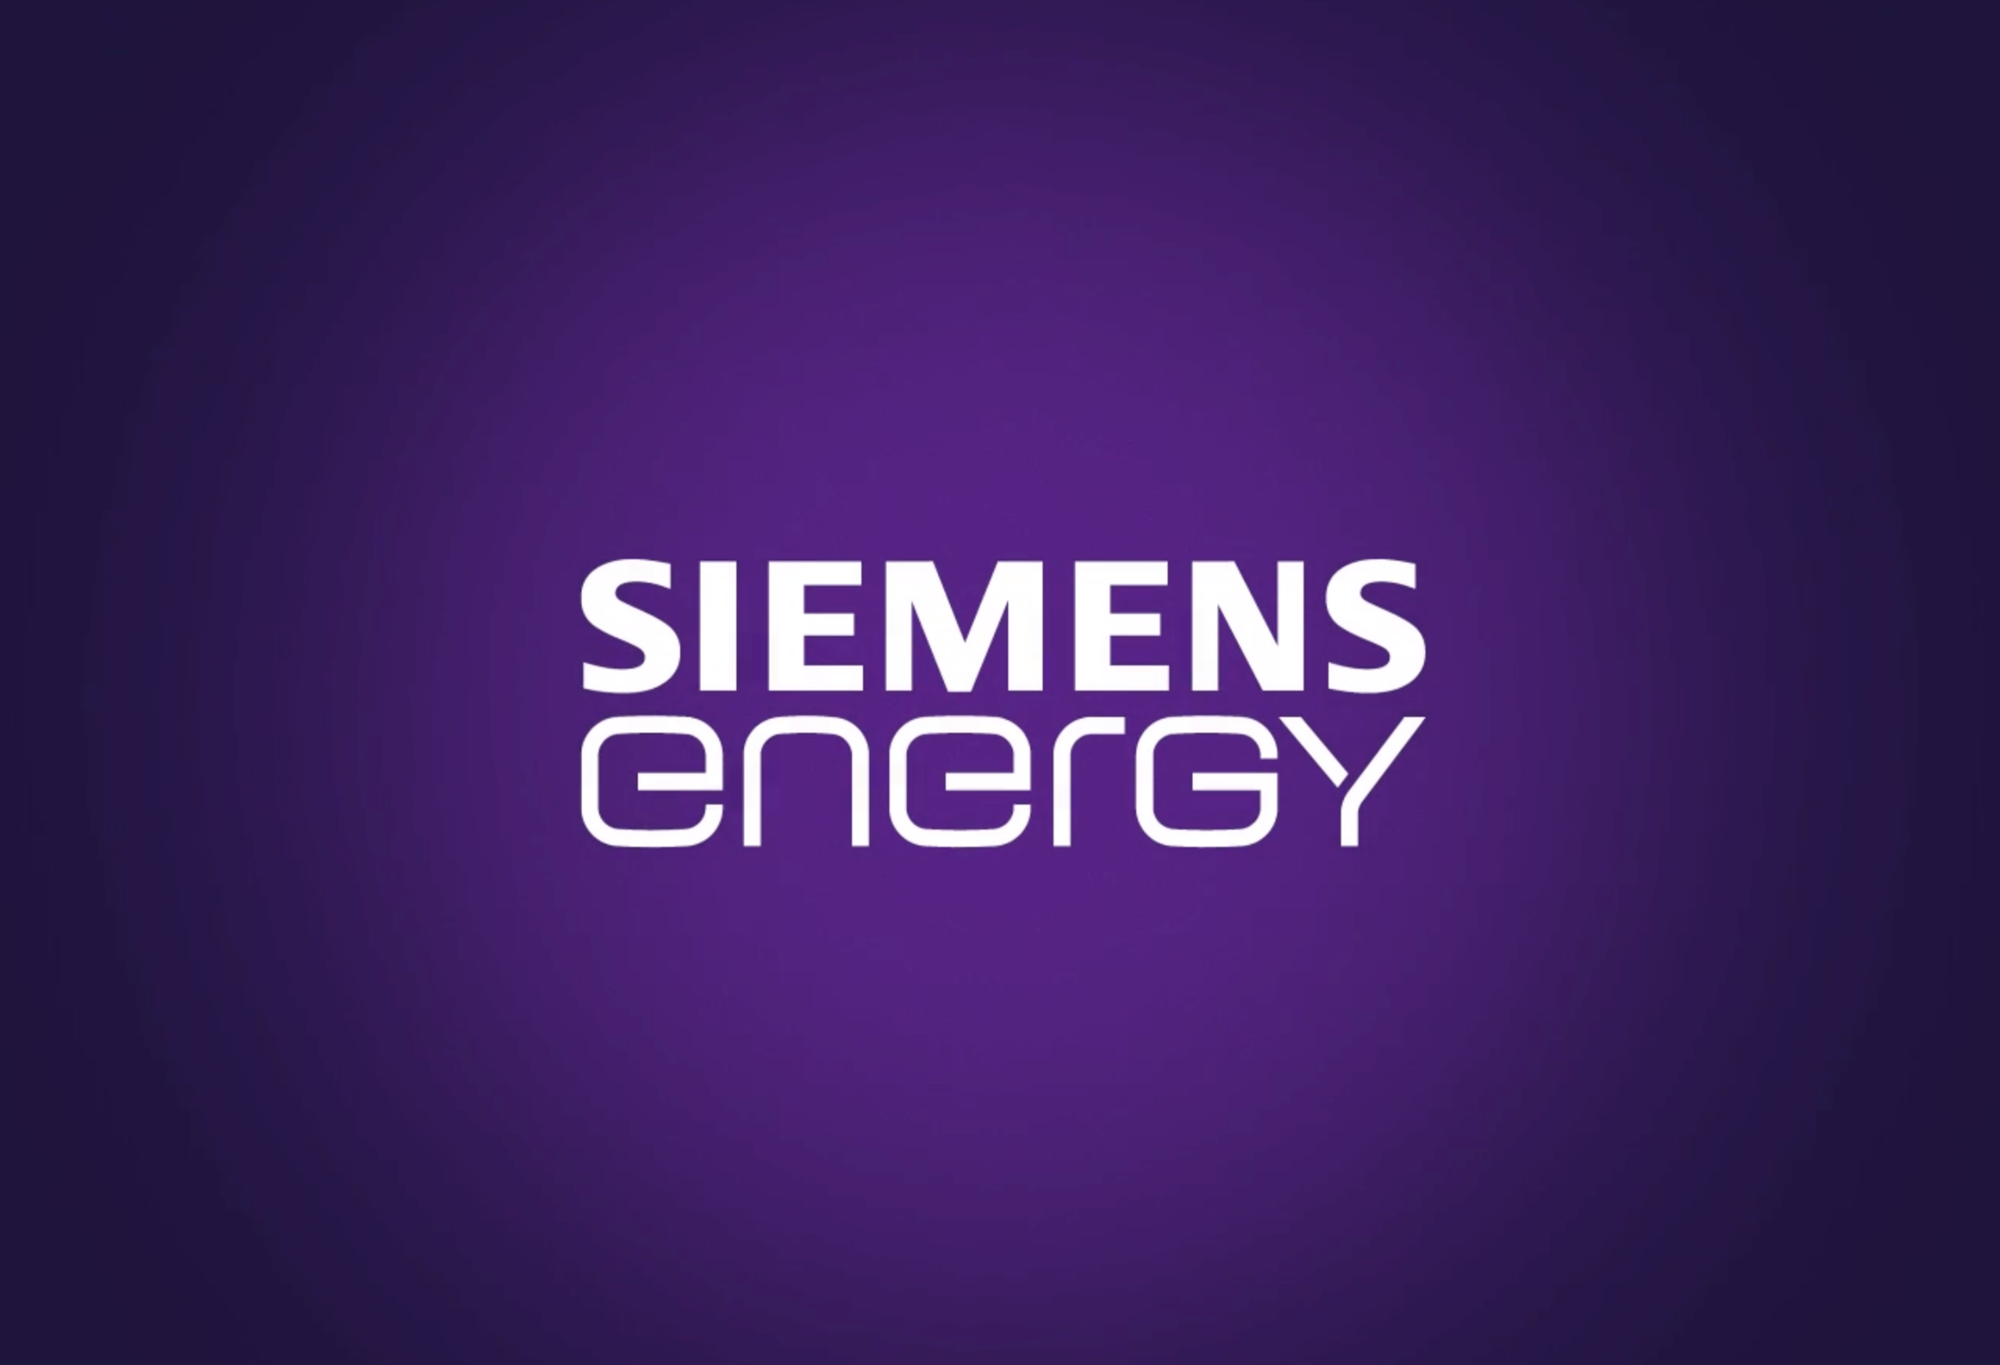 Siemens Energy Careers